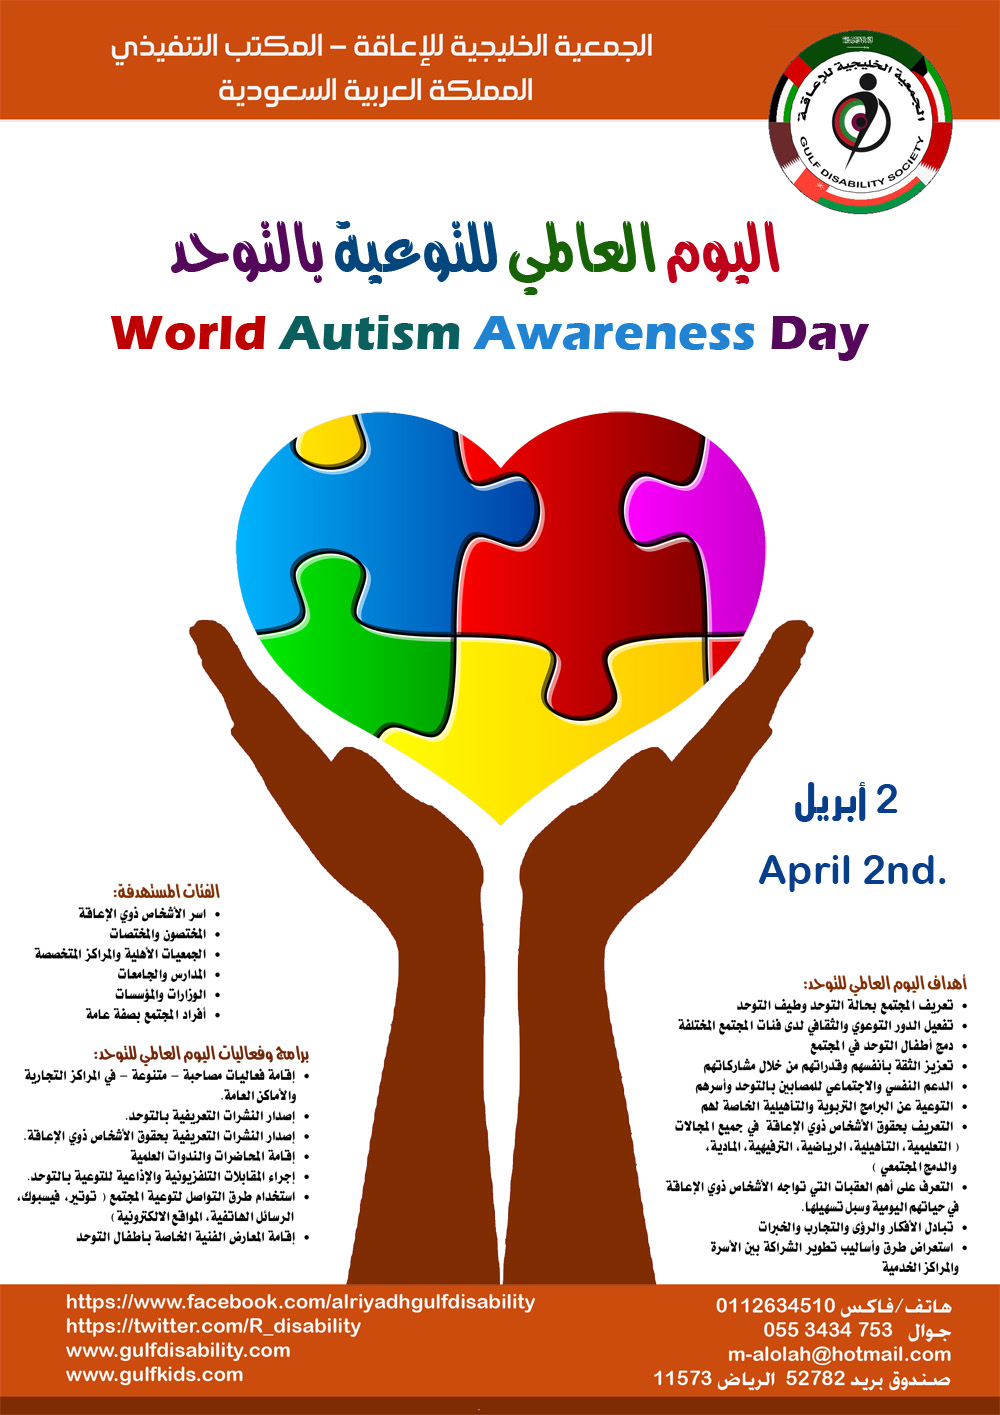 اليوم العالمي للتوعية بالتوحد 2 أبريل 2014 2 جمادى الثاني 1435هـ منتدى أطفال الخليج ذوي الاحتياجات الخاصة